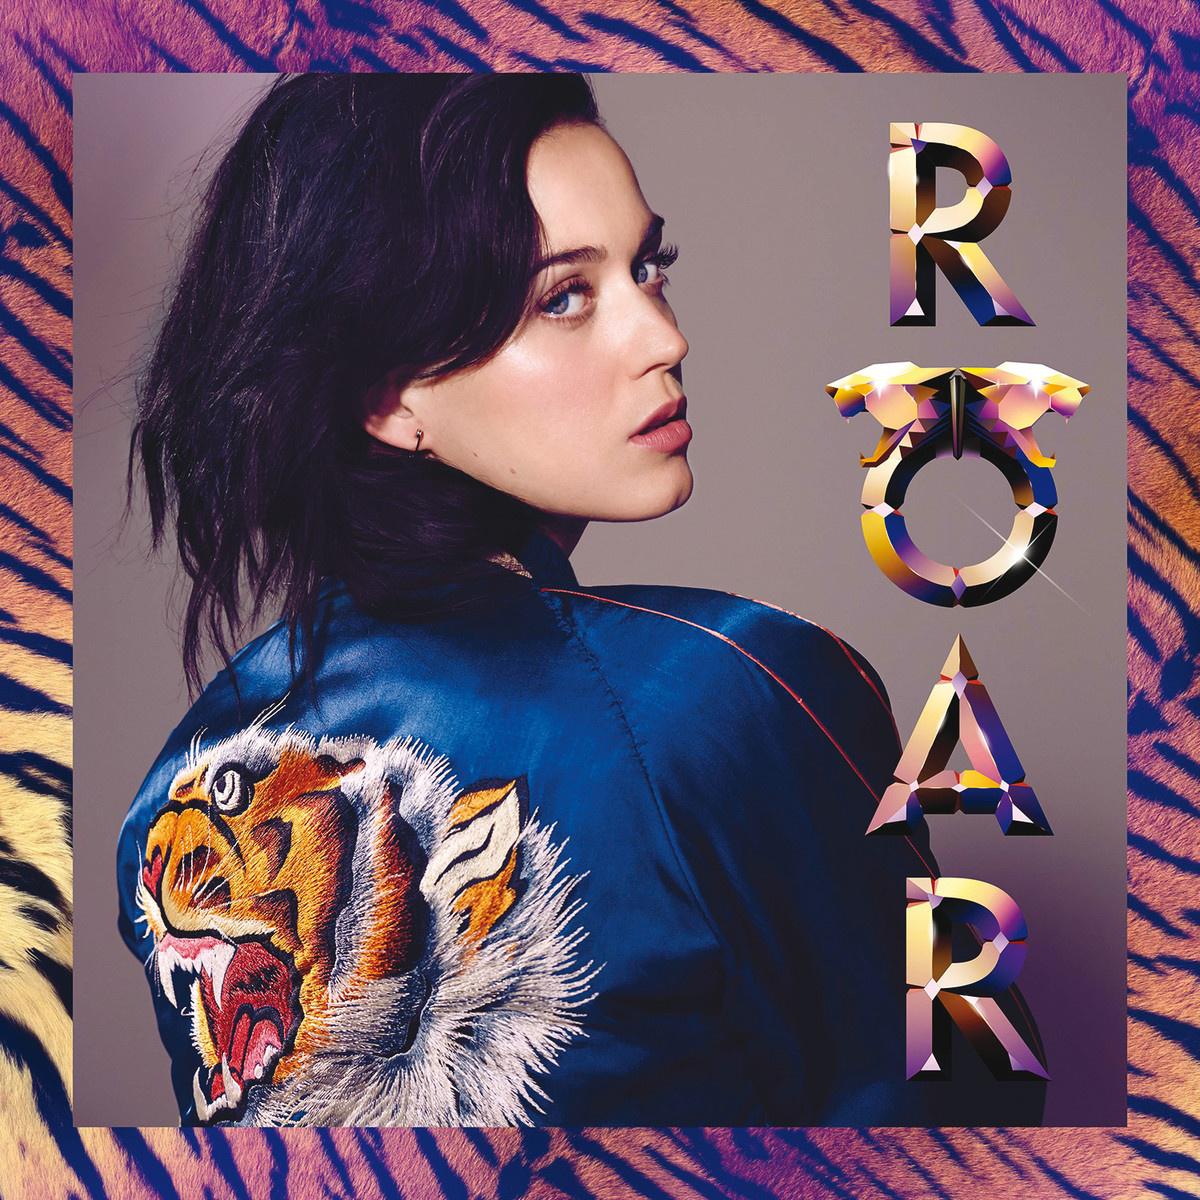 Roar歌词 歌手Katy Perry-专辑Roar-单曲《Roar》LRC歌词下载